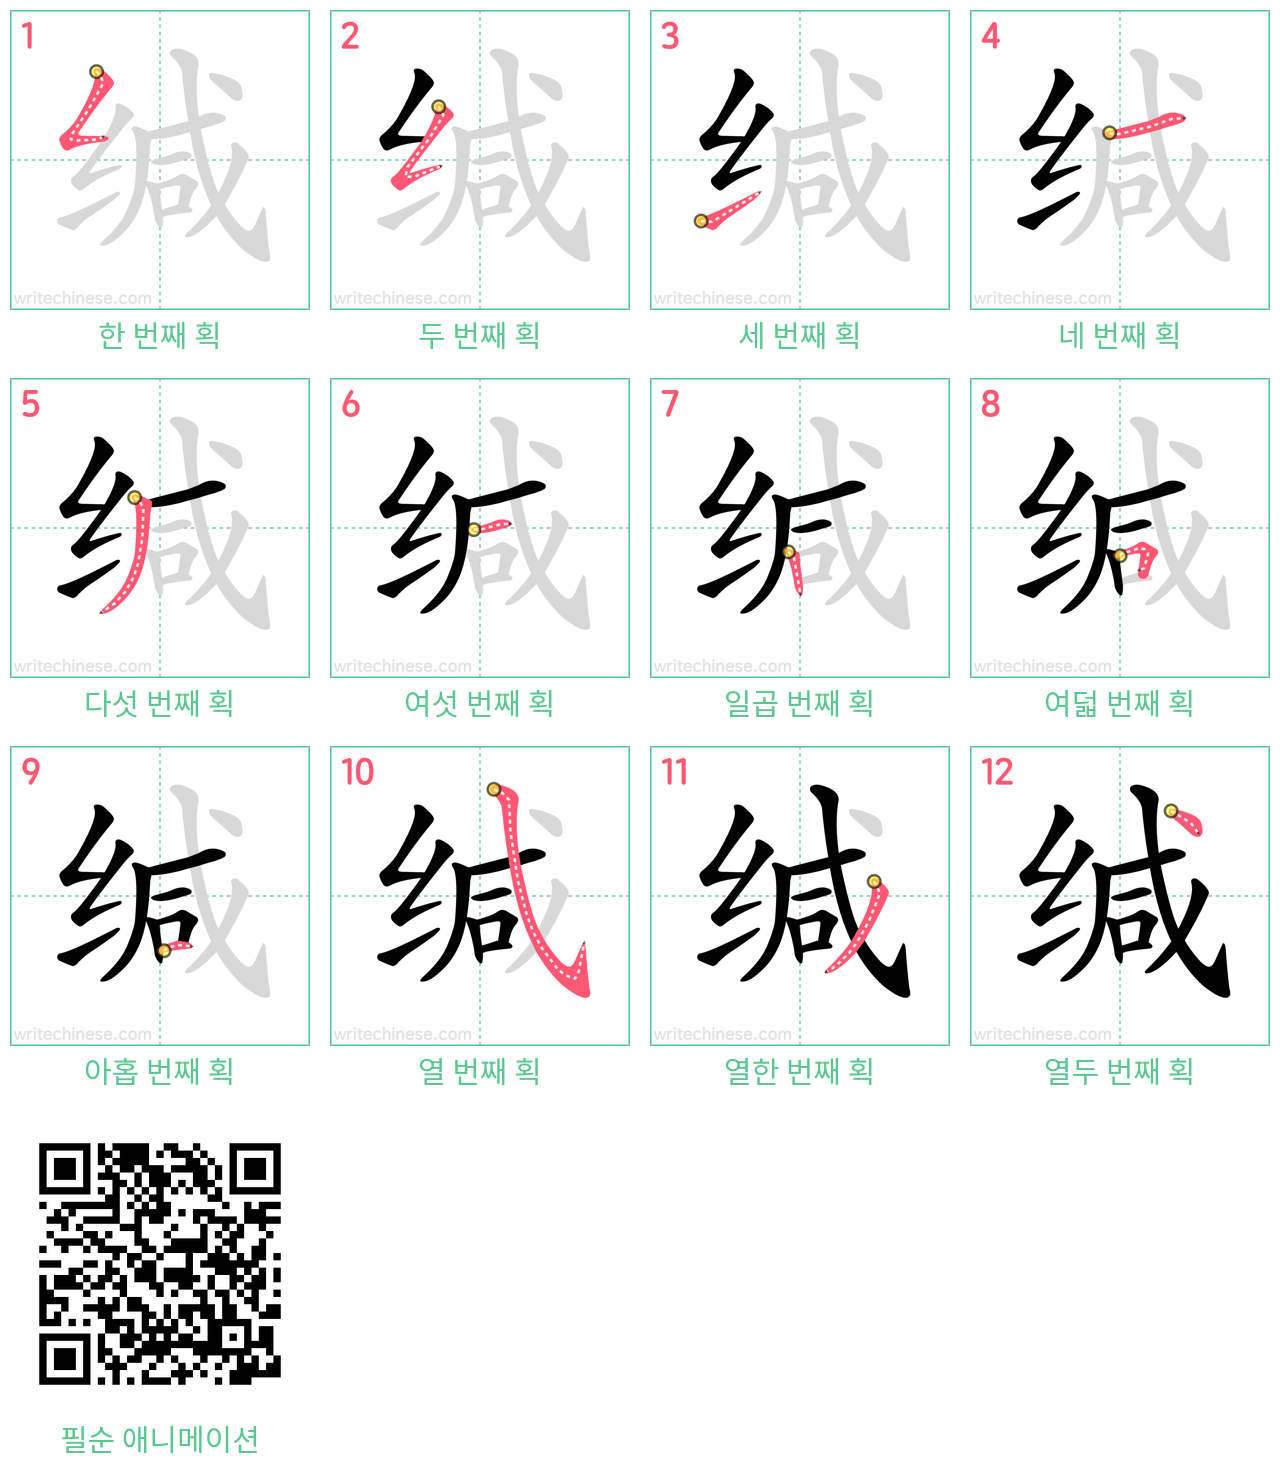 缄 step-by-step stroke order diagrams